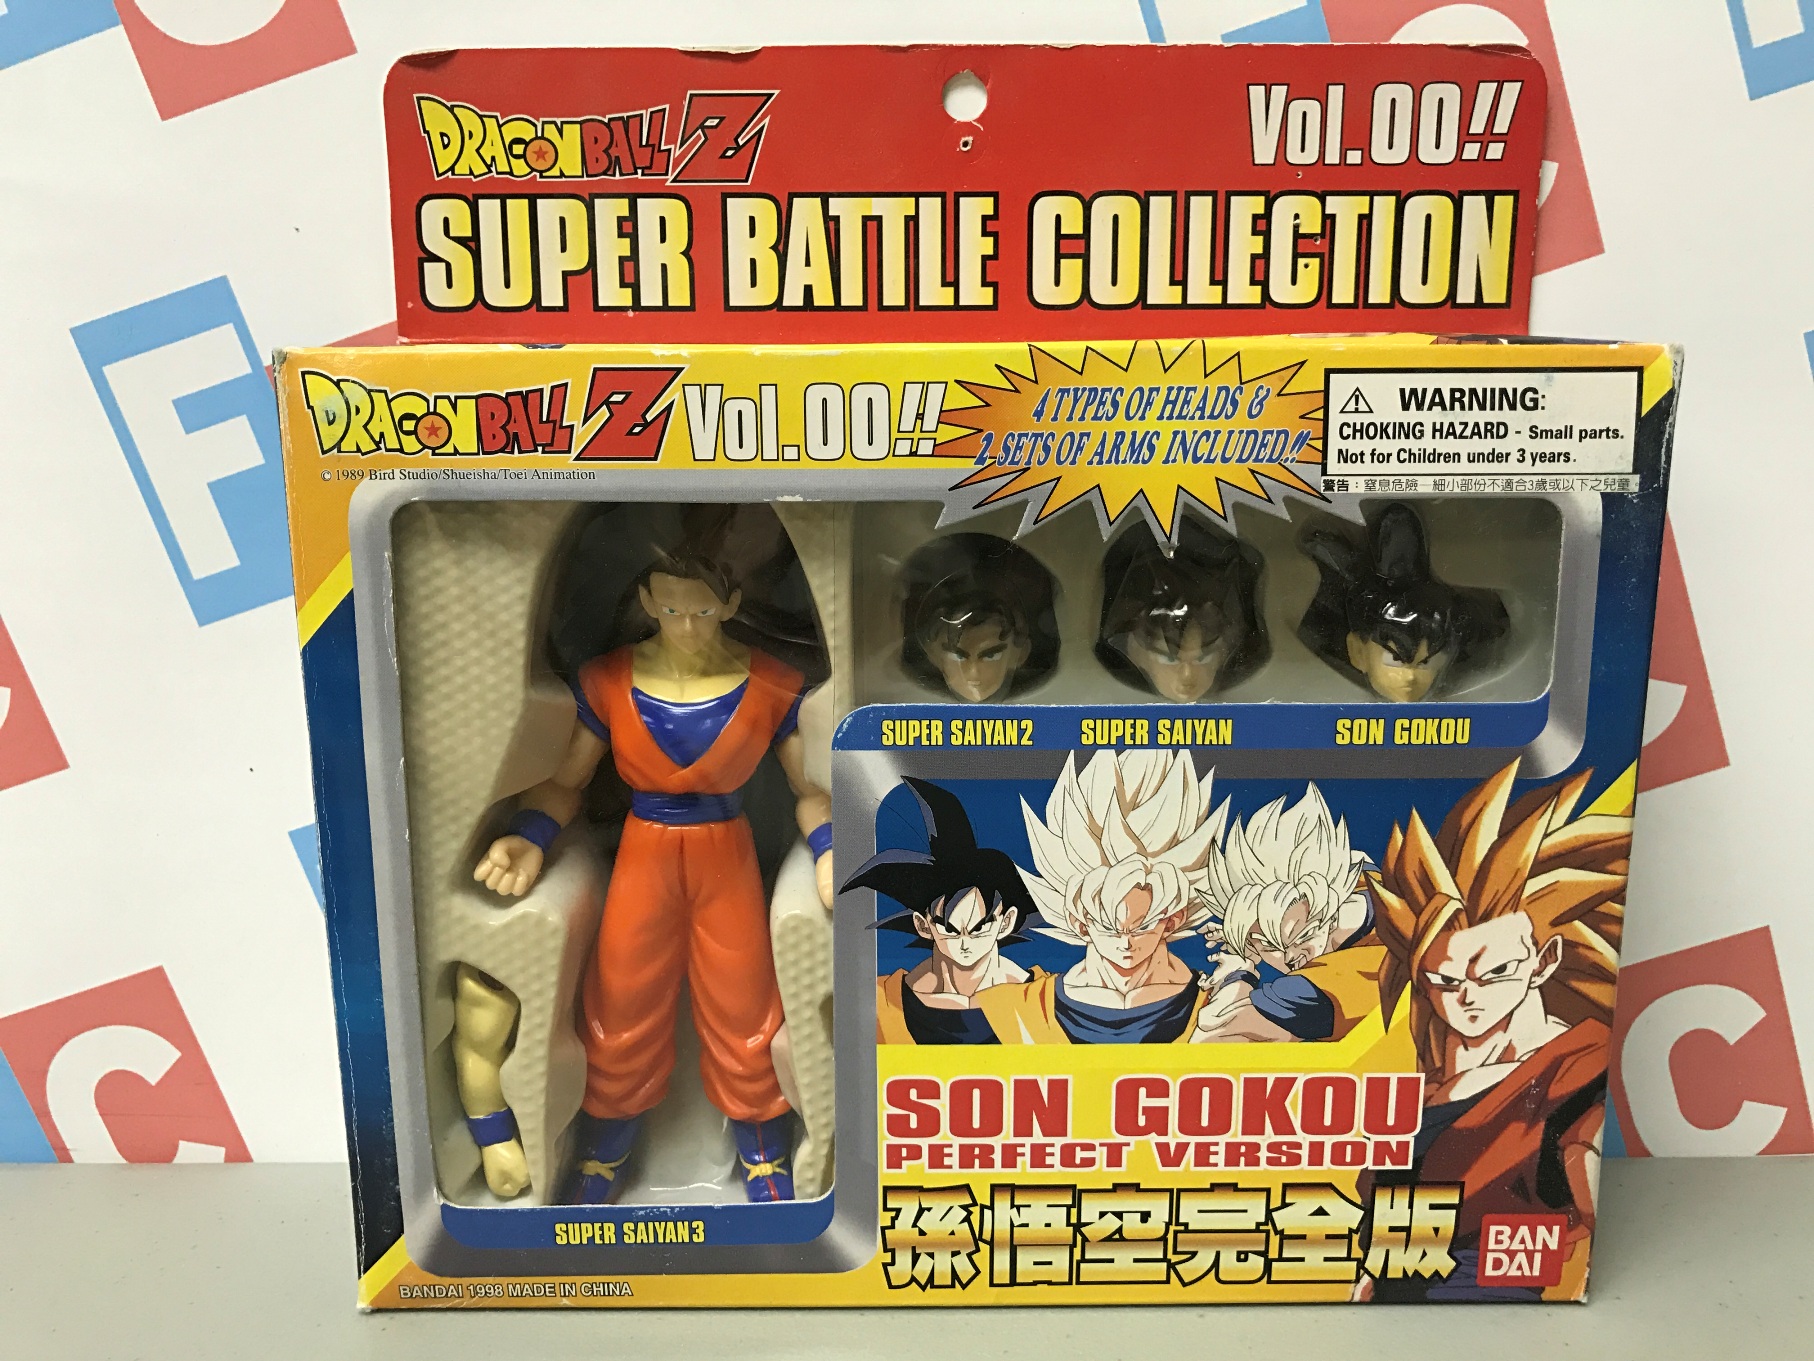 Super Battle Collection Vol. 28 - Son Gokou and Pan - DBZ Figures.com